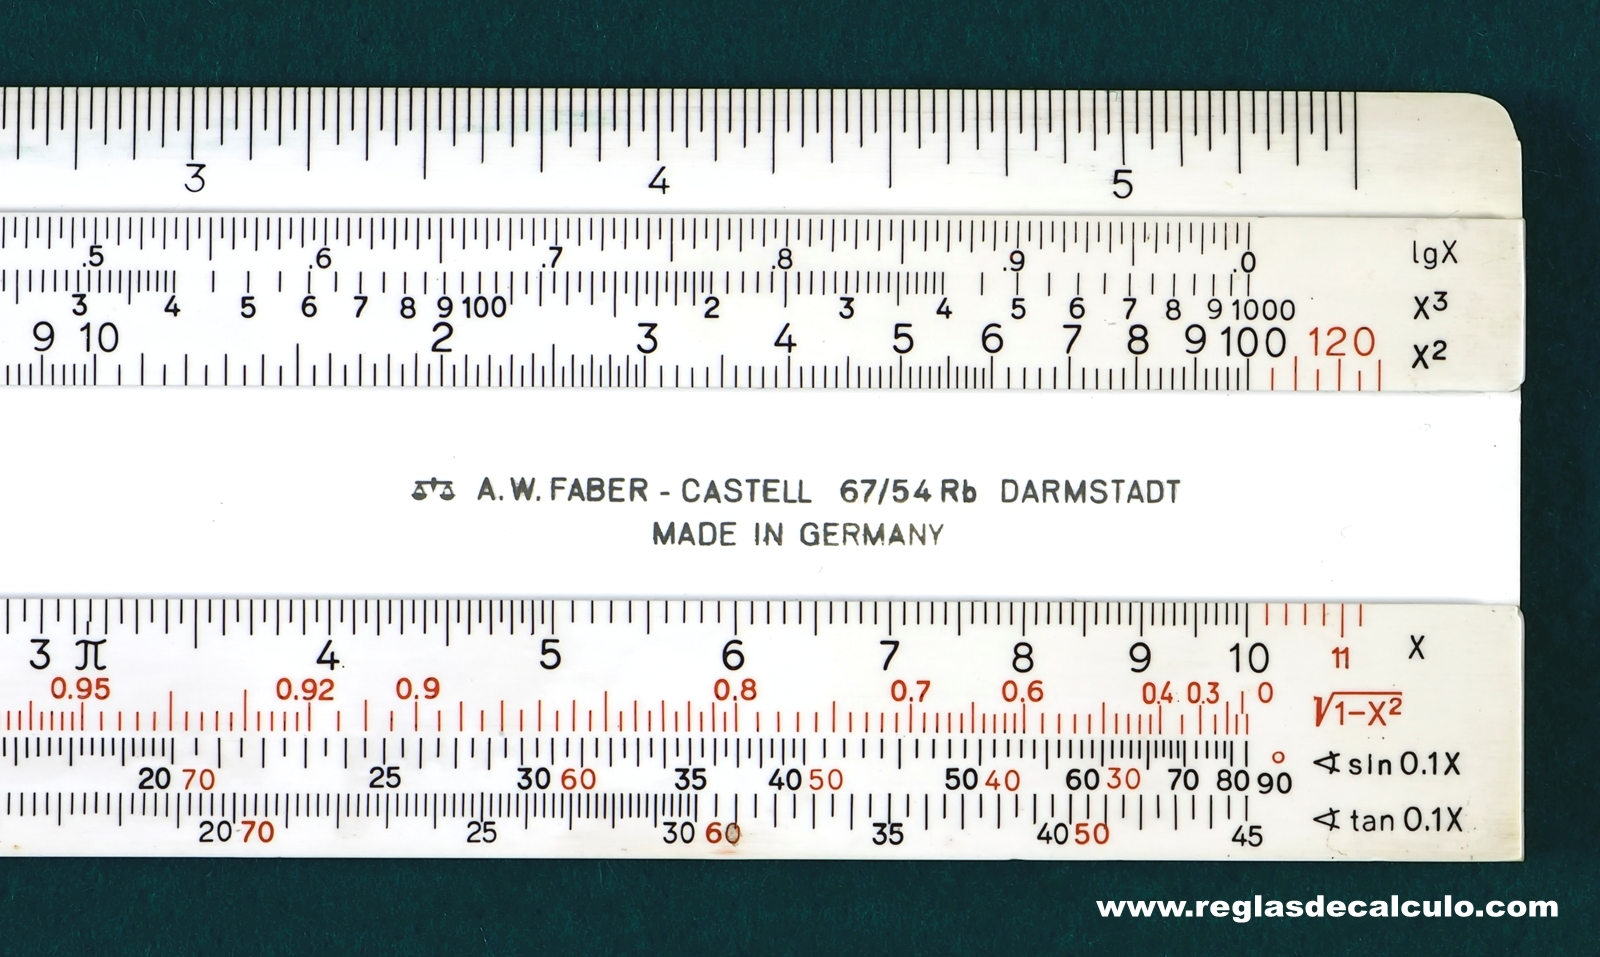 Faber Castell 67/54Rb Darmstadt Regla de Calculo Slide rule